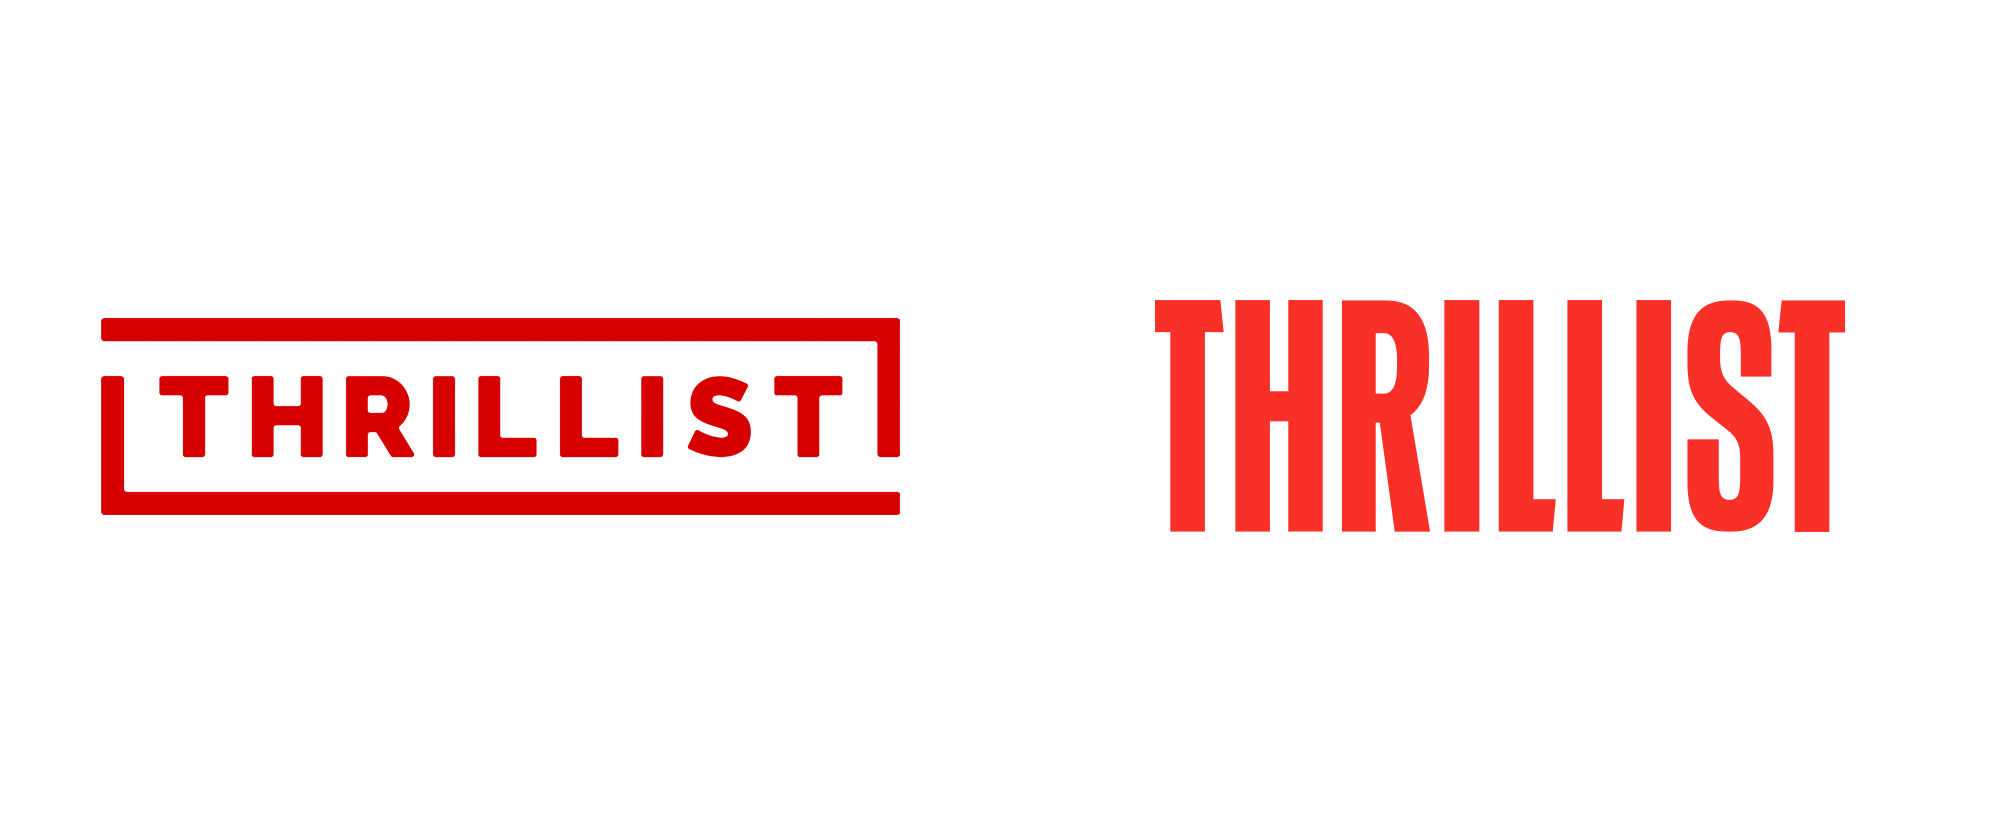 Thrillist Logo - Brand New: New Logo for Thrillist